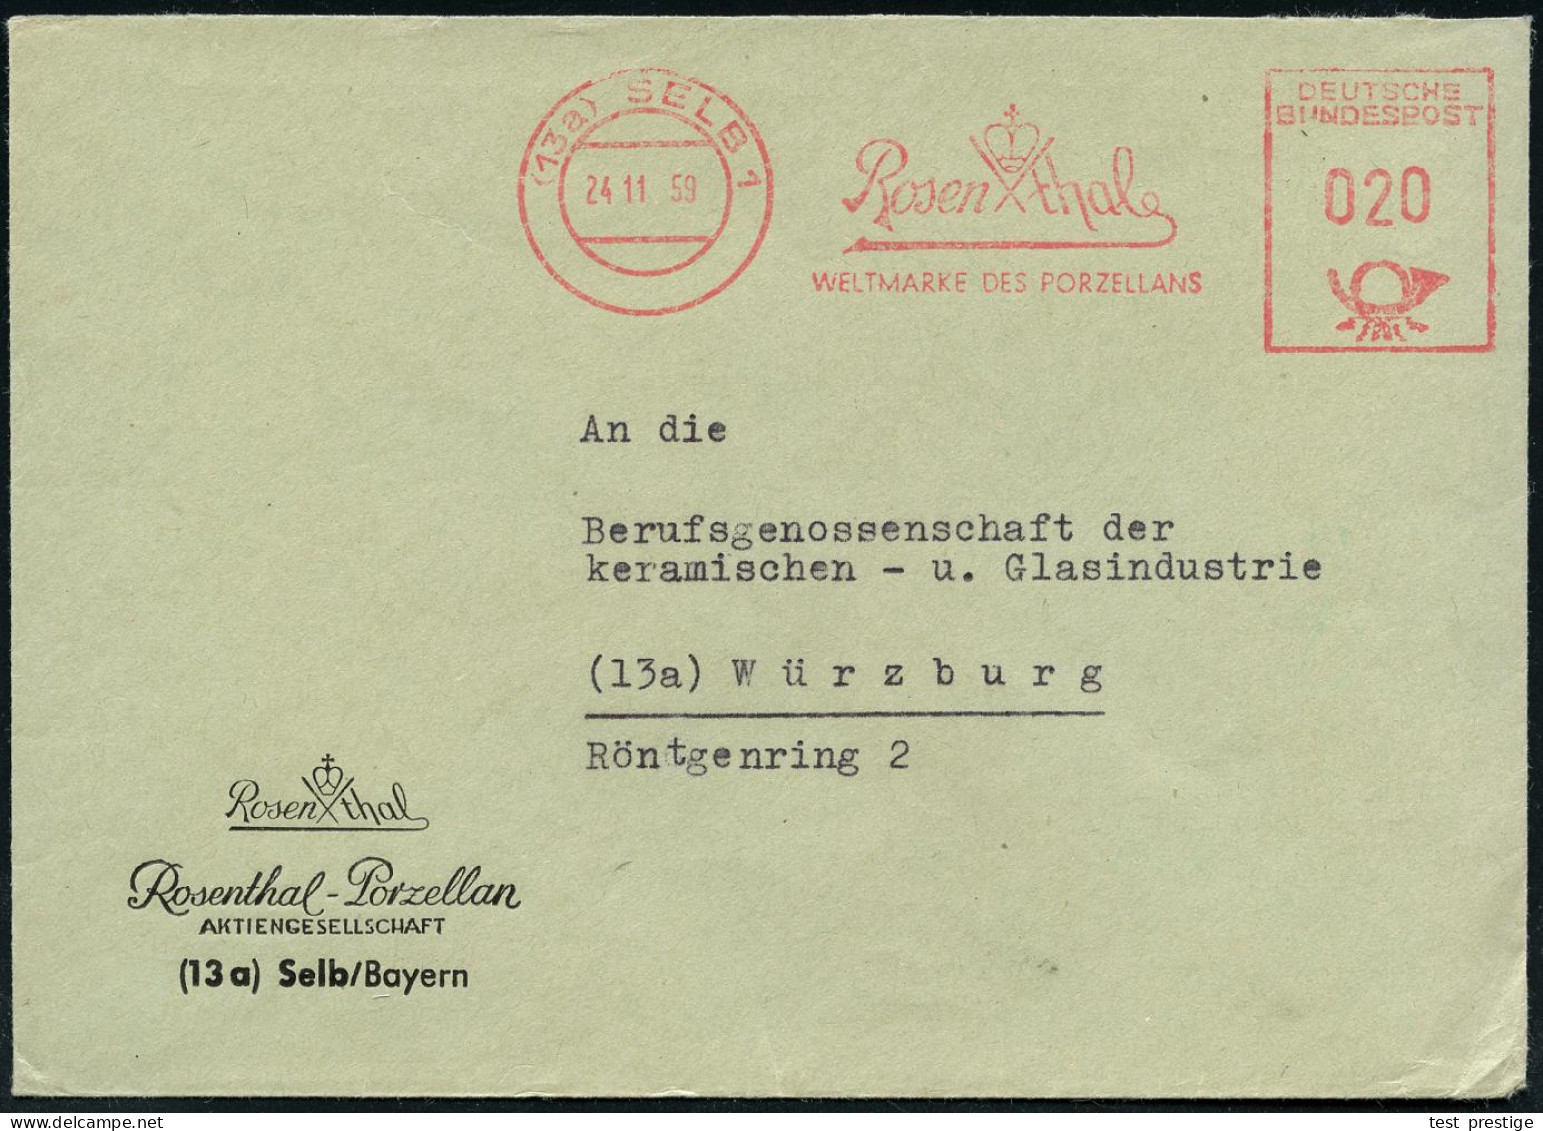 (13a) SELB 1/ Rosenthal/ WELTMARKE DES PORZELLANS 1959 (24.11.) AFS (Firmen-Logo) Motivgl. Firmen-Bf. (Dü.E-23CO) - KERA - Porzellan